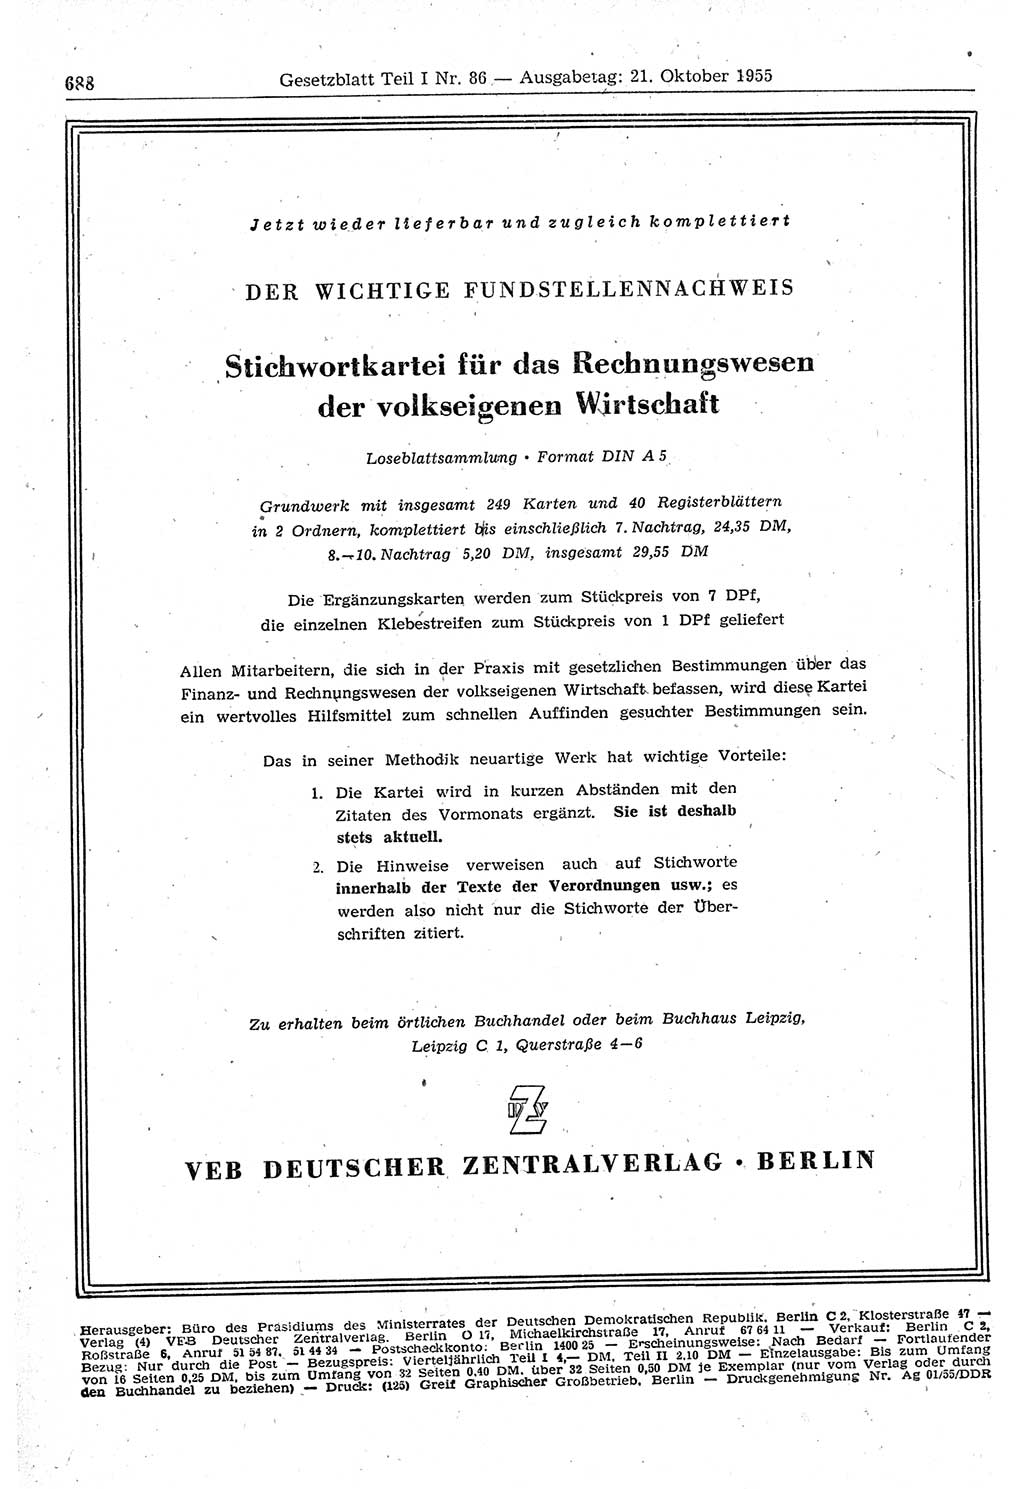 Gesetzblatt (GBl.) der Deutschen Demokratischen Republik (DDR) Teil Ⅰ 1955, Seite 688 (GBl. DDR Ⅰ 1955, S. 688)